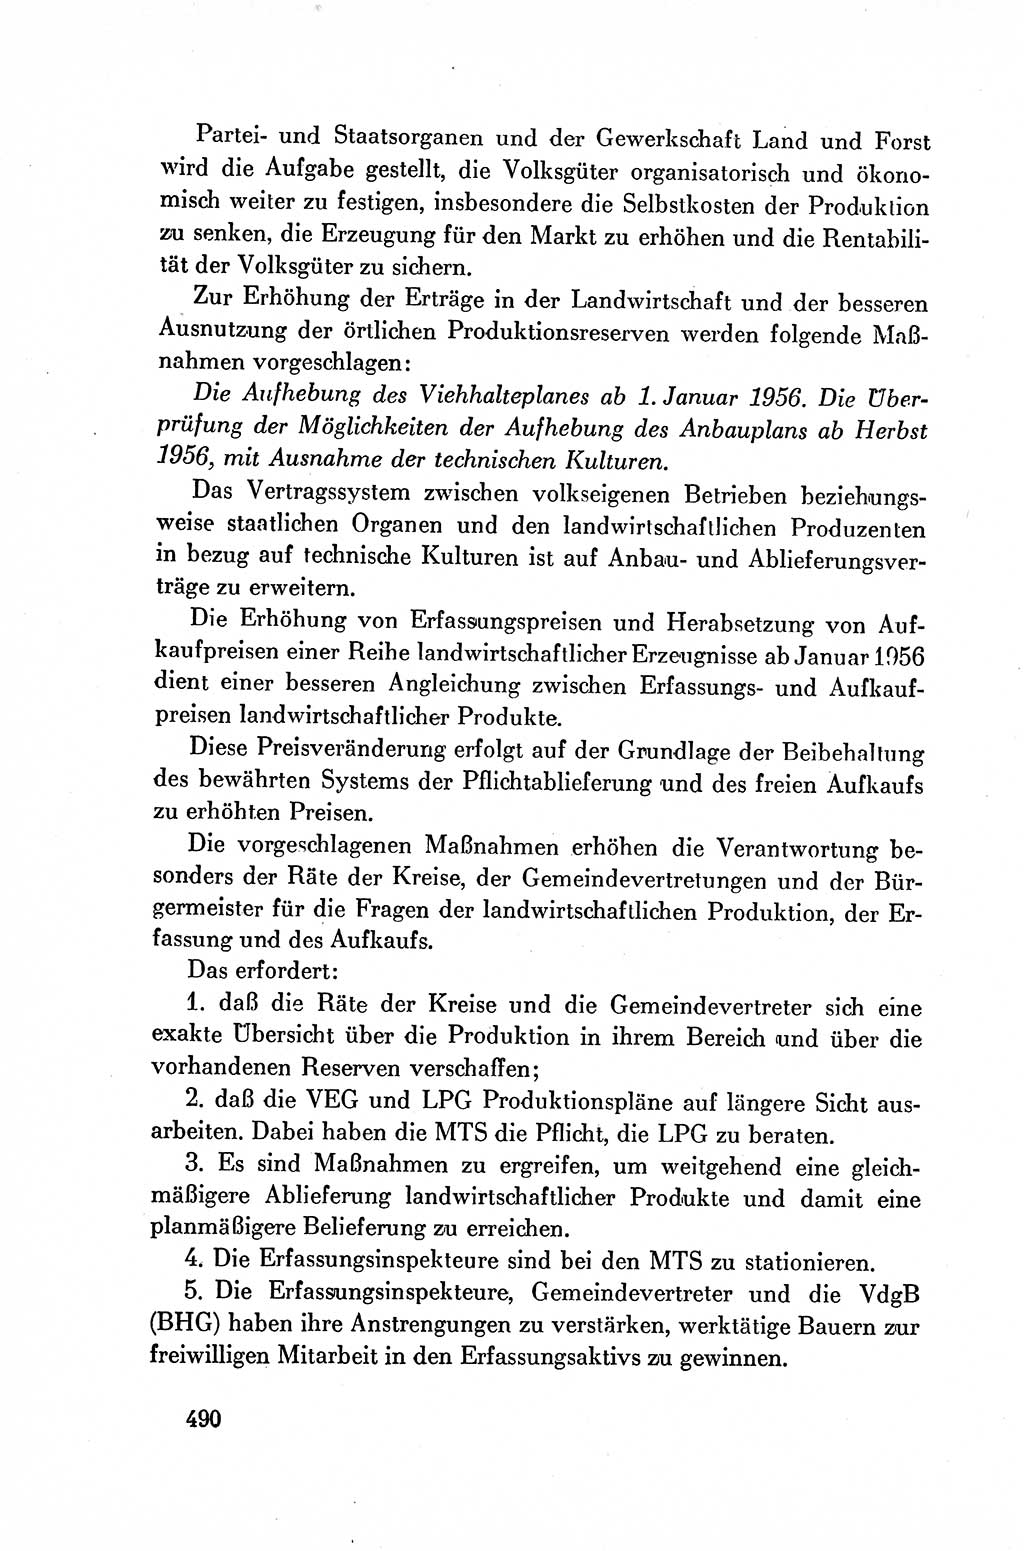 Dokumente der Sozialistischen Einheitspartei Deutschlands (SED) [Deutsche Demokratische Republik (DDR)] 1954-1955, Seite 490 (Dok. SED DDR 1954-1955, S. 490)